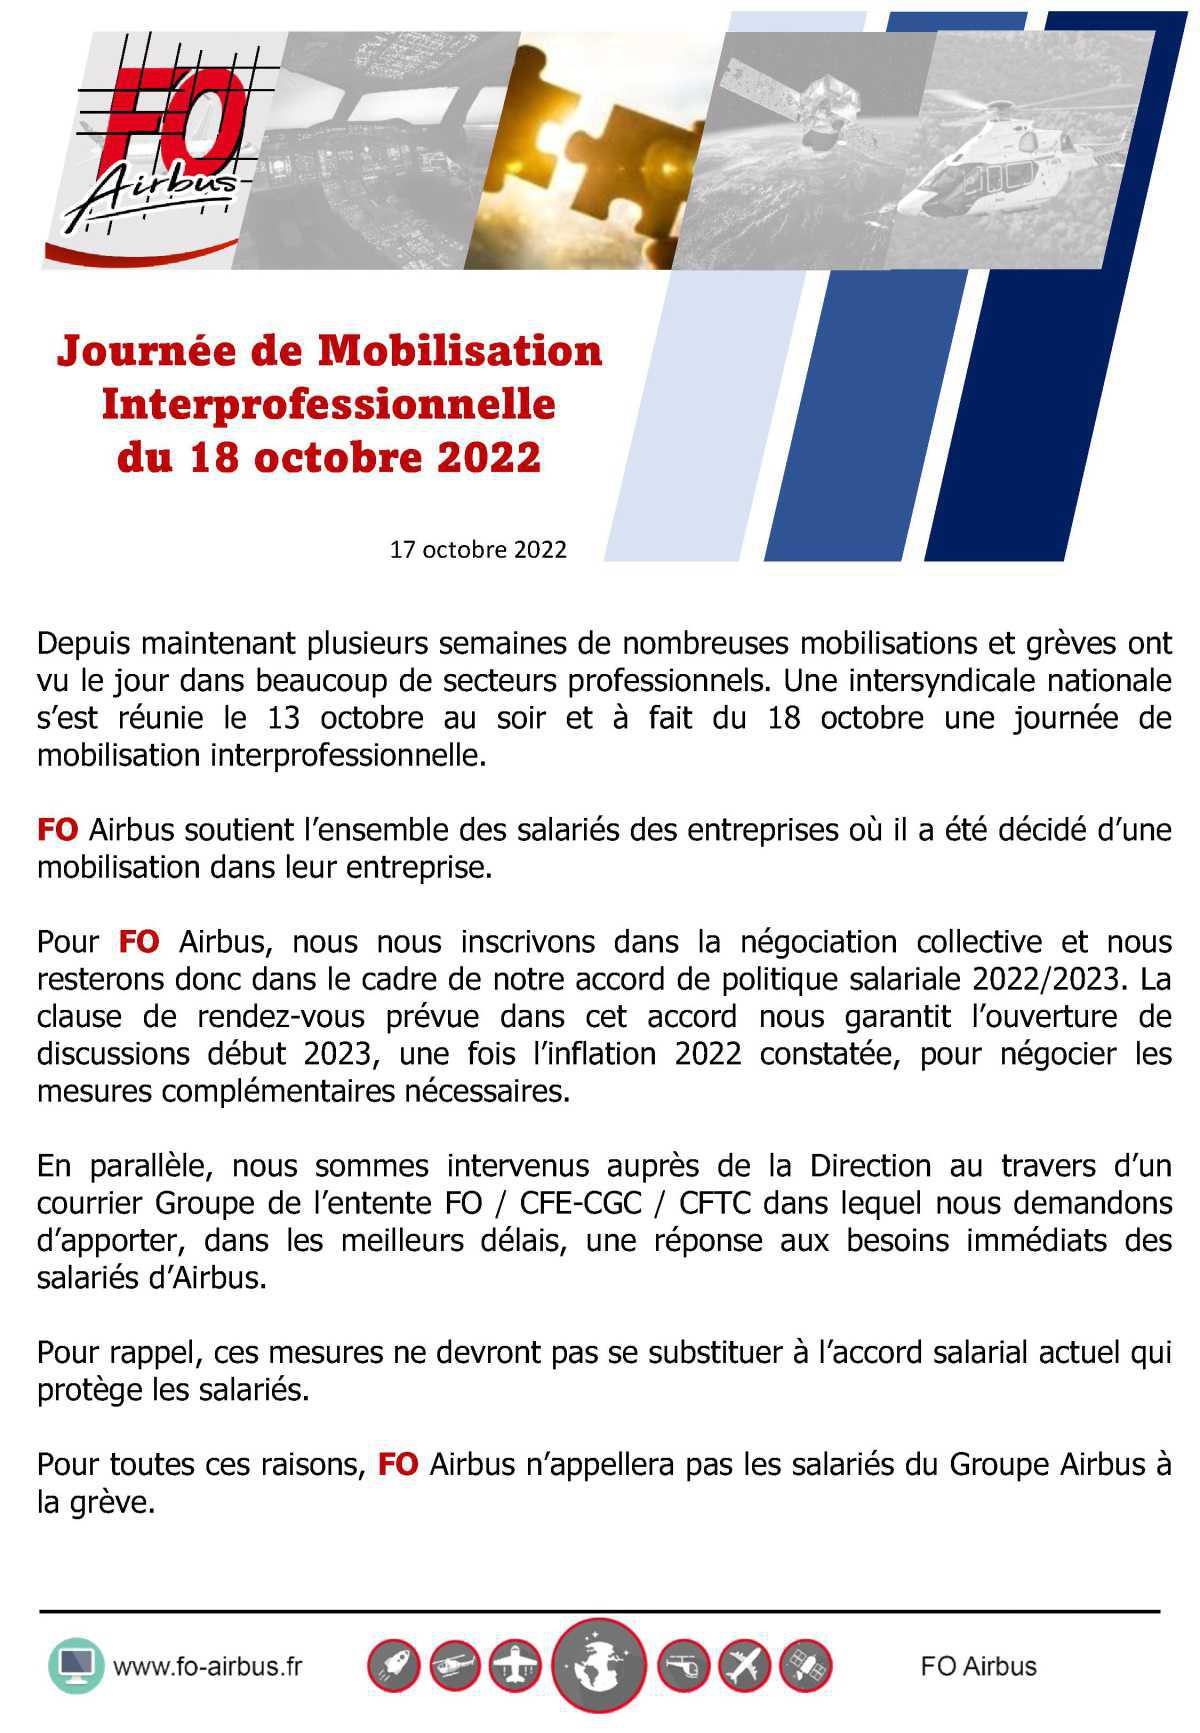 Journée de Mobilisation Interprofessionnelle du 18 octobre 2022